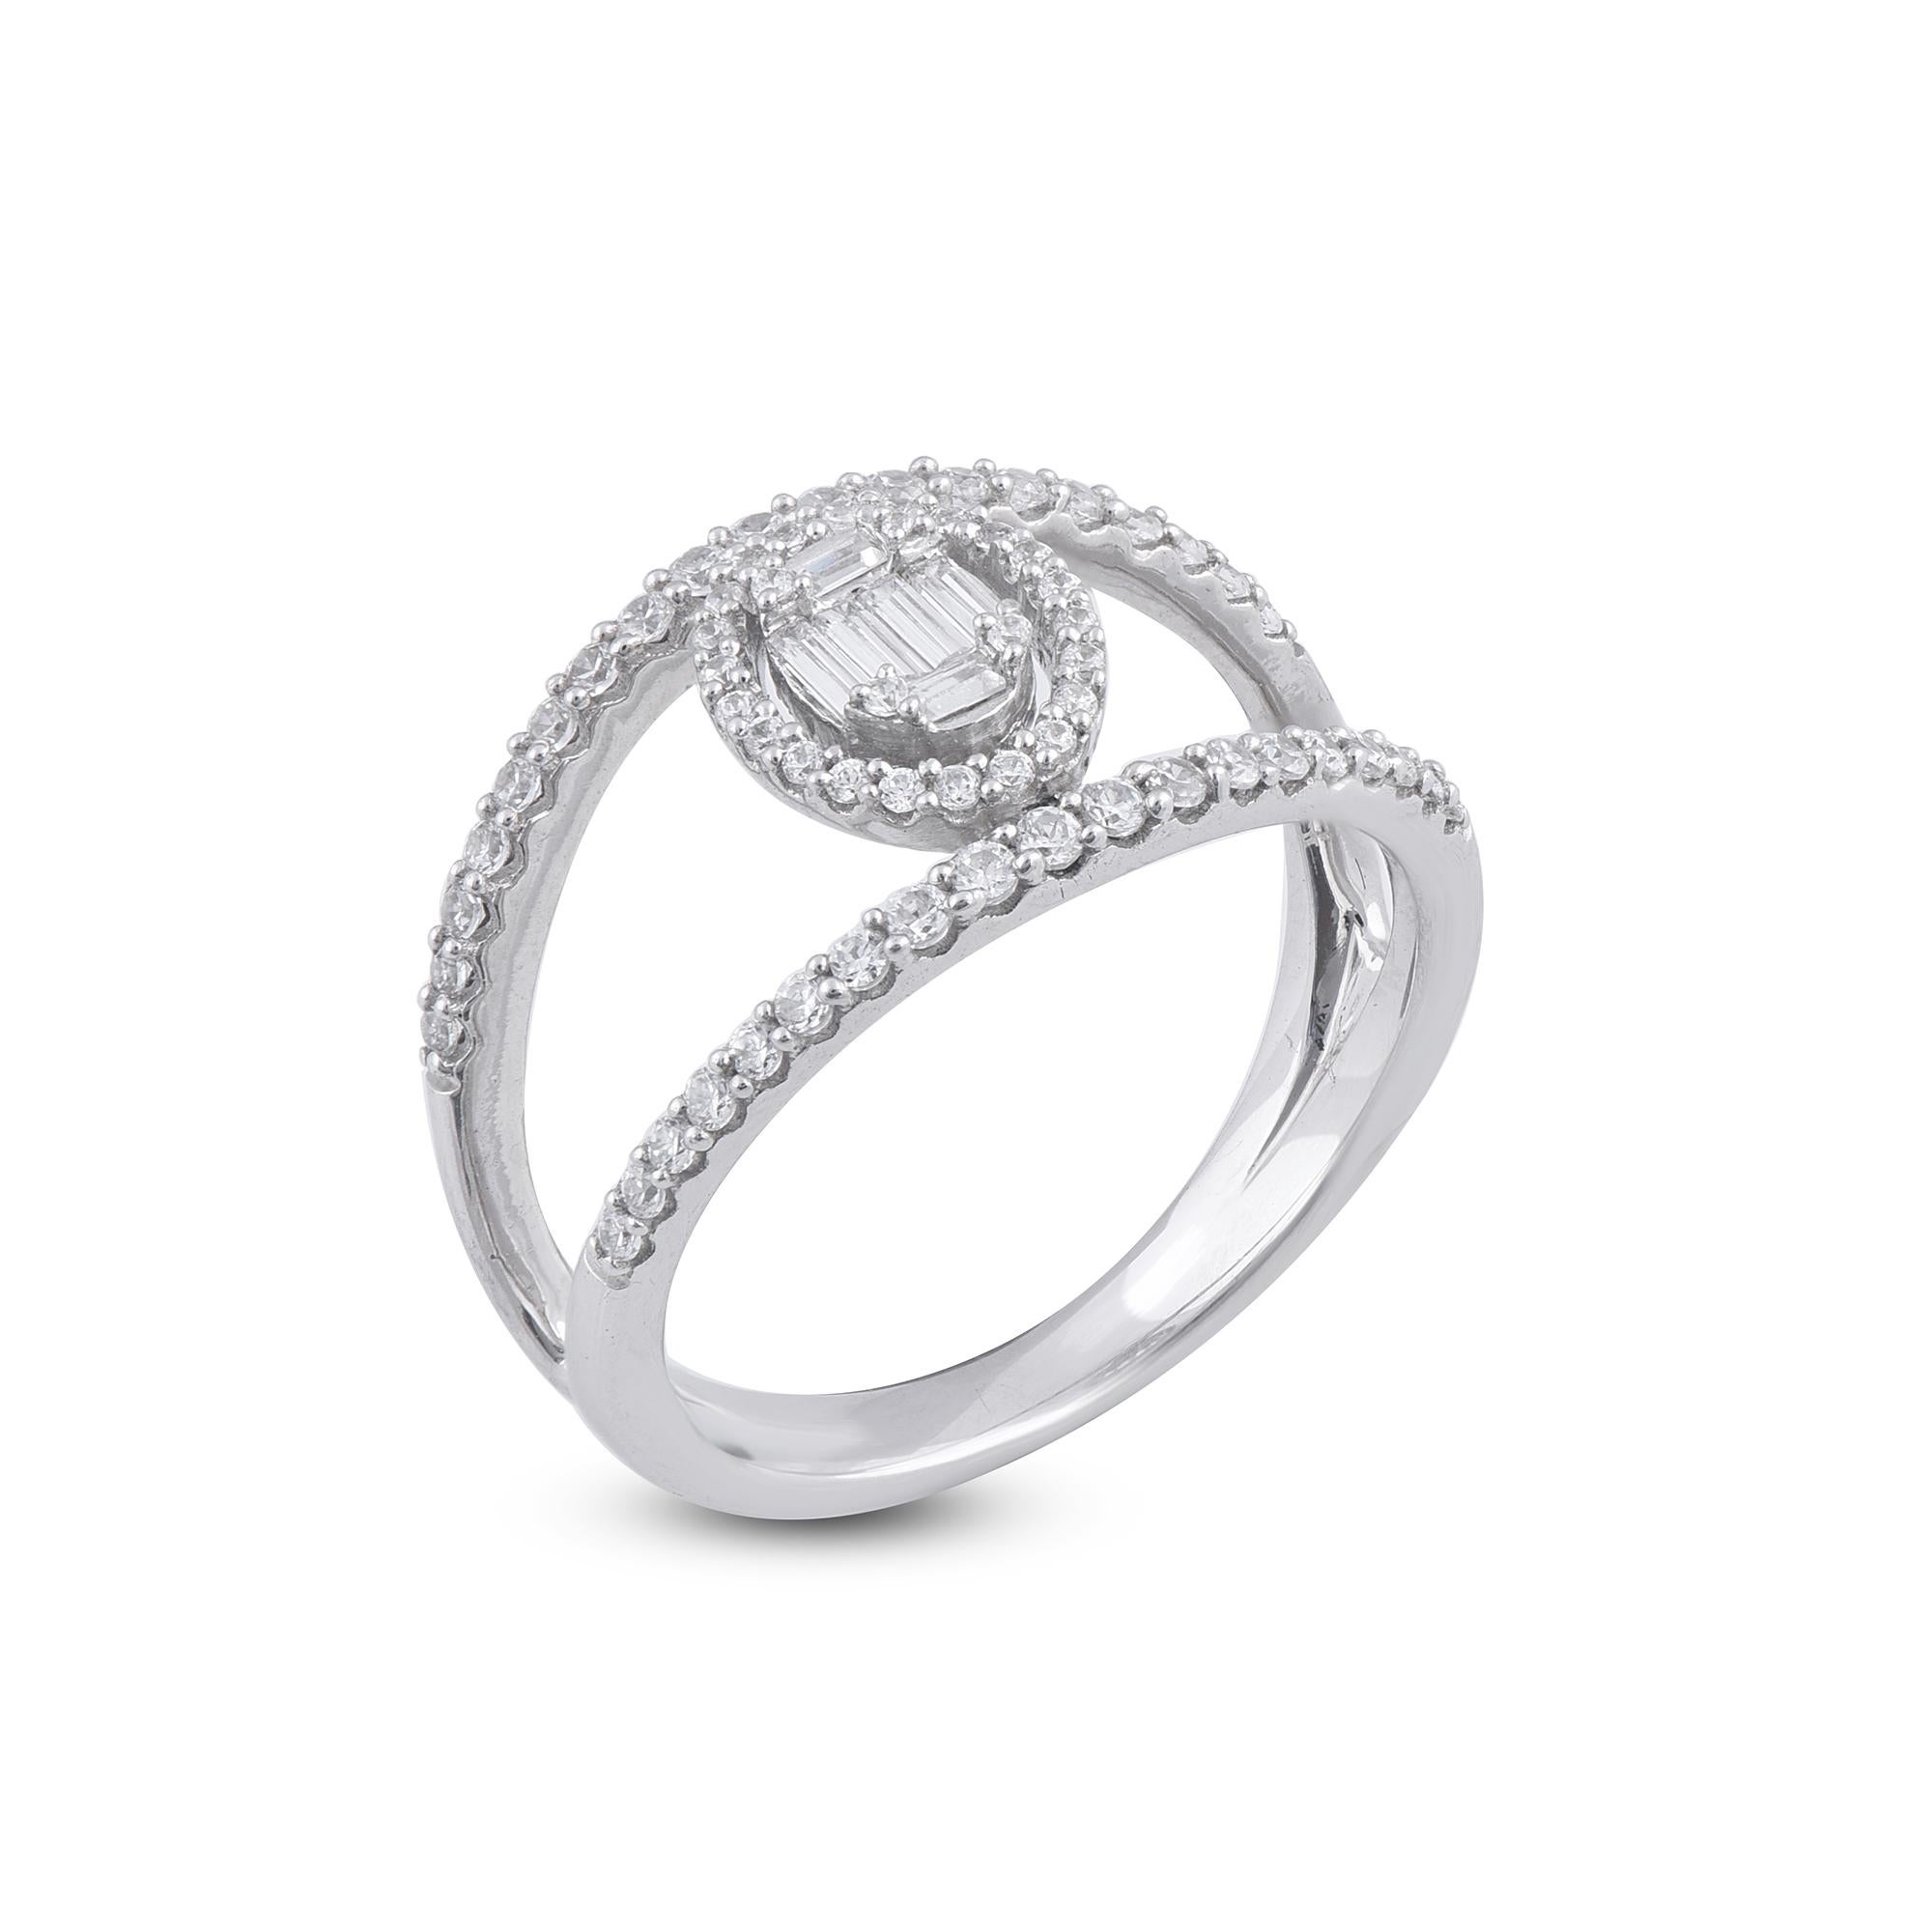 Machen Sie Ihre Liebe mit dem Charme dieses Ringes mit Diamantbesatz bekannt. Der Ring ist aus 14-karätigem Gold in Weiß-, Rosé- oder Gelbgold gefertigt und verfügt über runde Brillanten 64 und Baguette - 6 weiße Diamanten, die in Zacken und Rillen